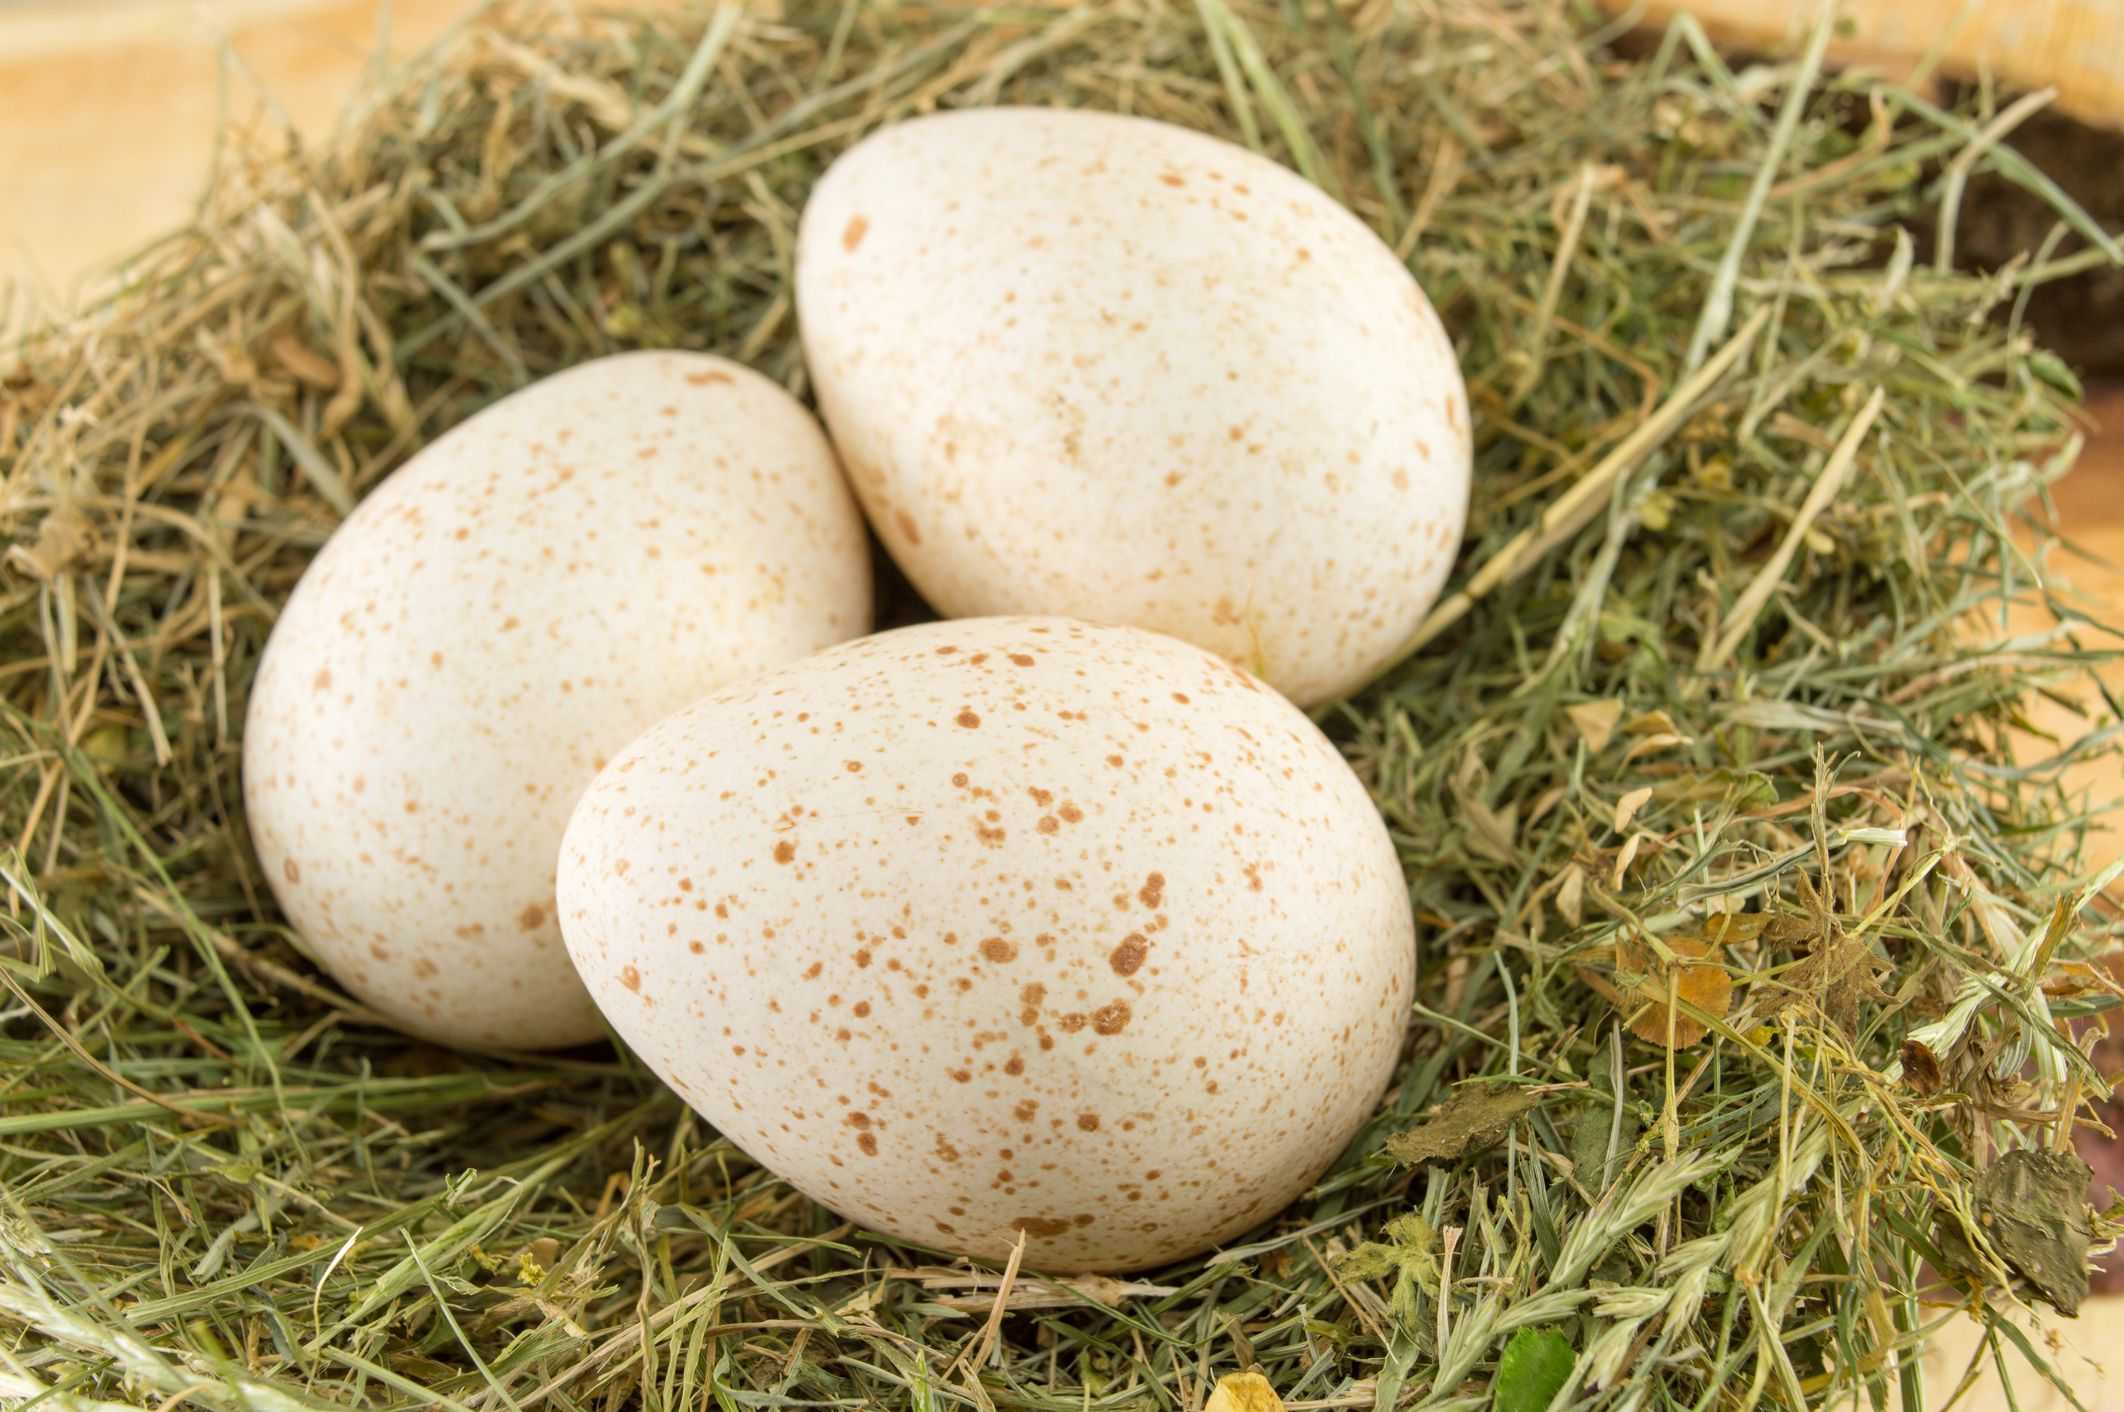 Можно ли использовать индюшиные яйца в пищу и зачем это делать